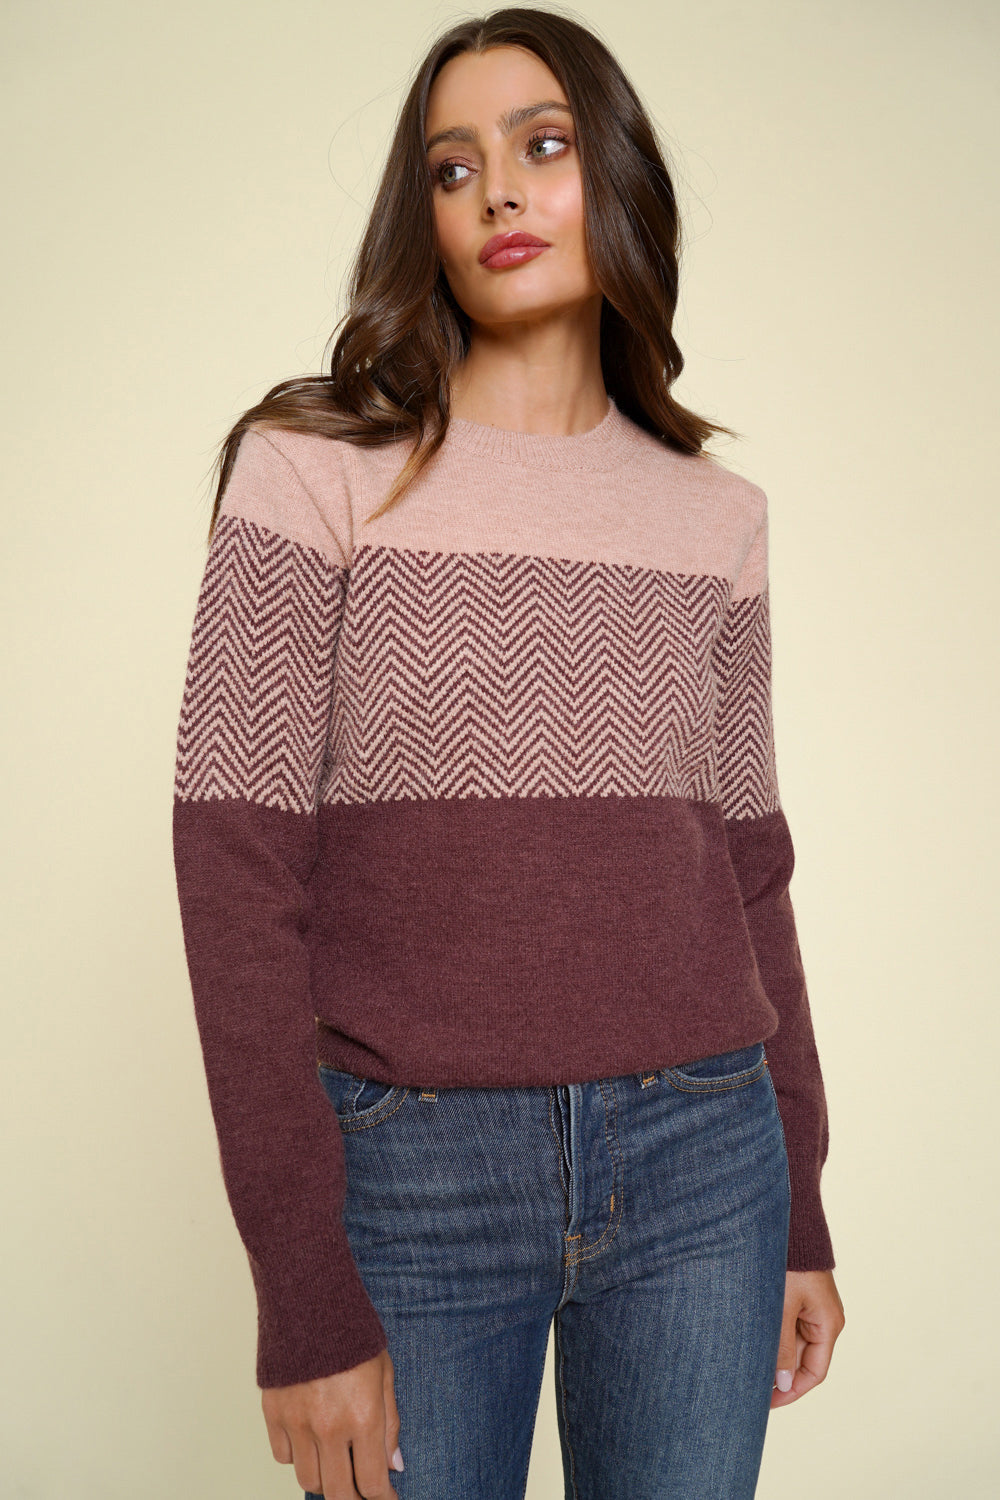 Sarah’s Plum Sweater